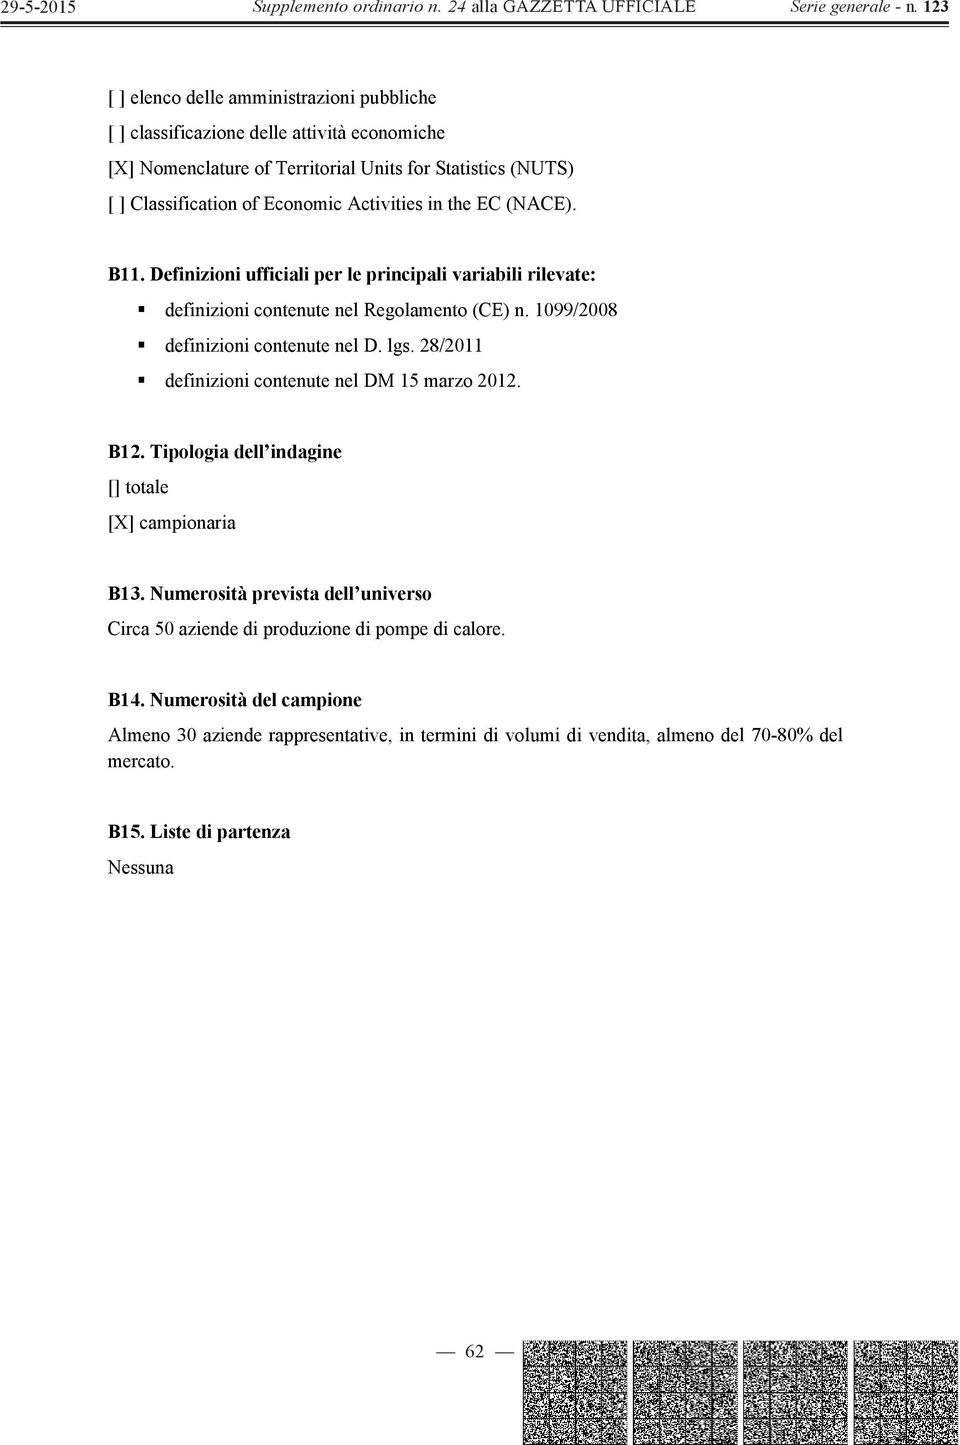 lgs. 28/2011 definizioni contenute nel DM 15 marzo 2012. B12. Tipologia dell indagine [] totale [X] campionaria B13.